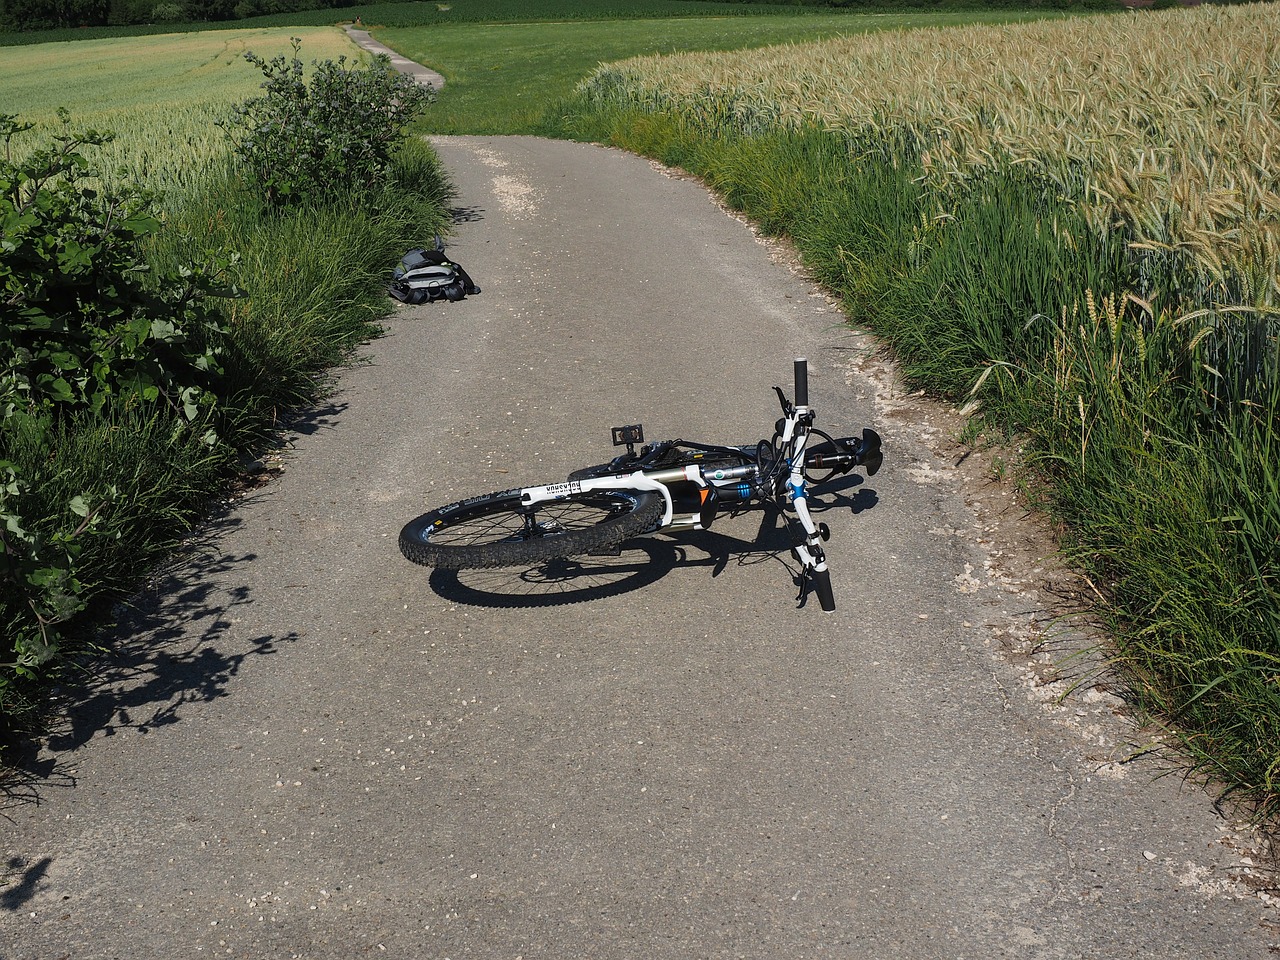 Γερμανία: Τι πρέπει να κάνετε εάν μετακινείστε με ποδήλατο και εμπλακείτε σε ατύχημα;